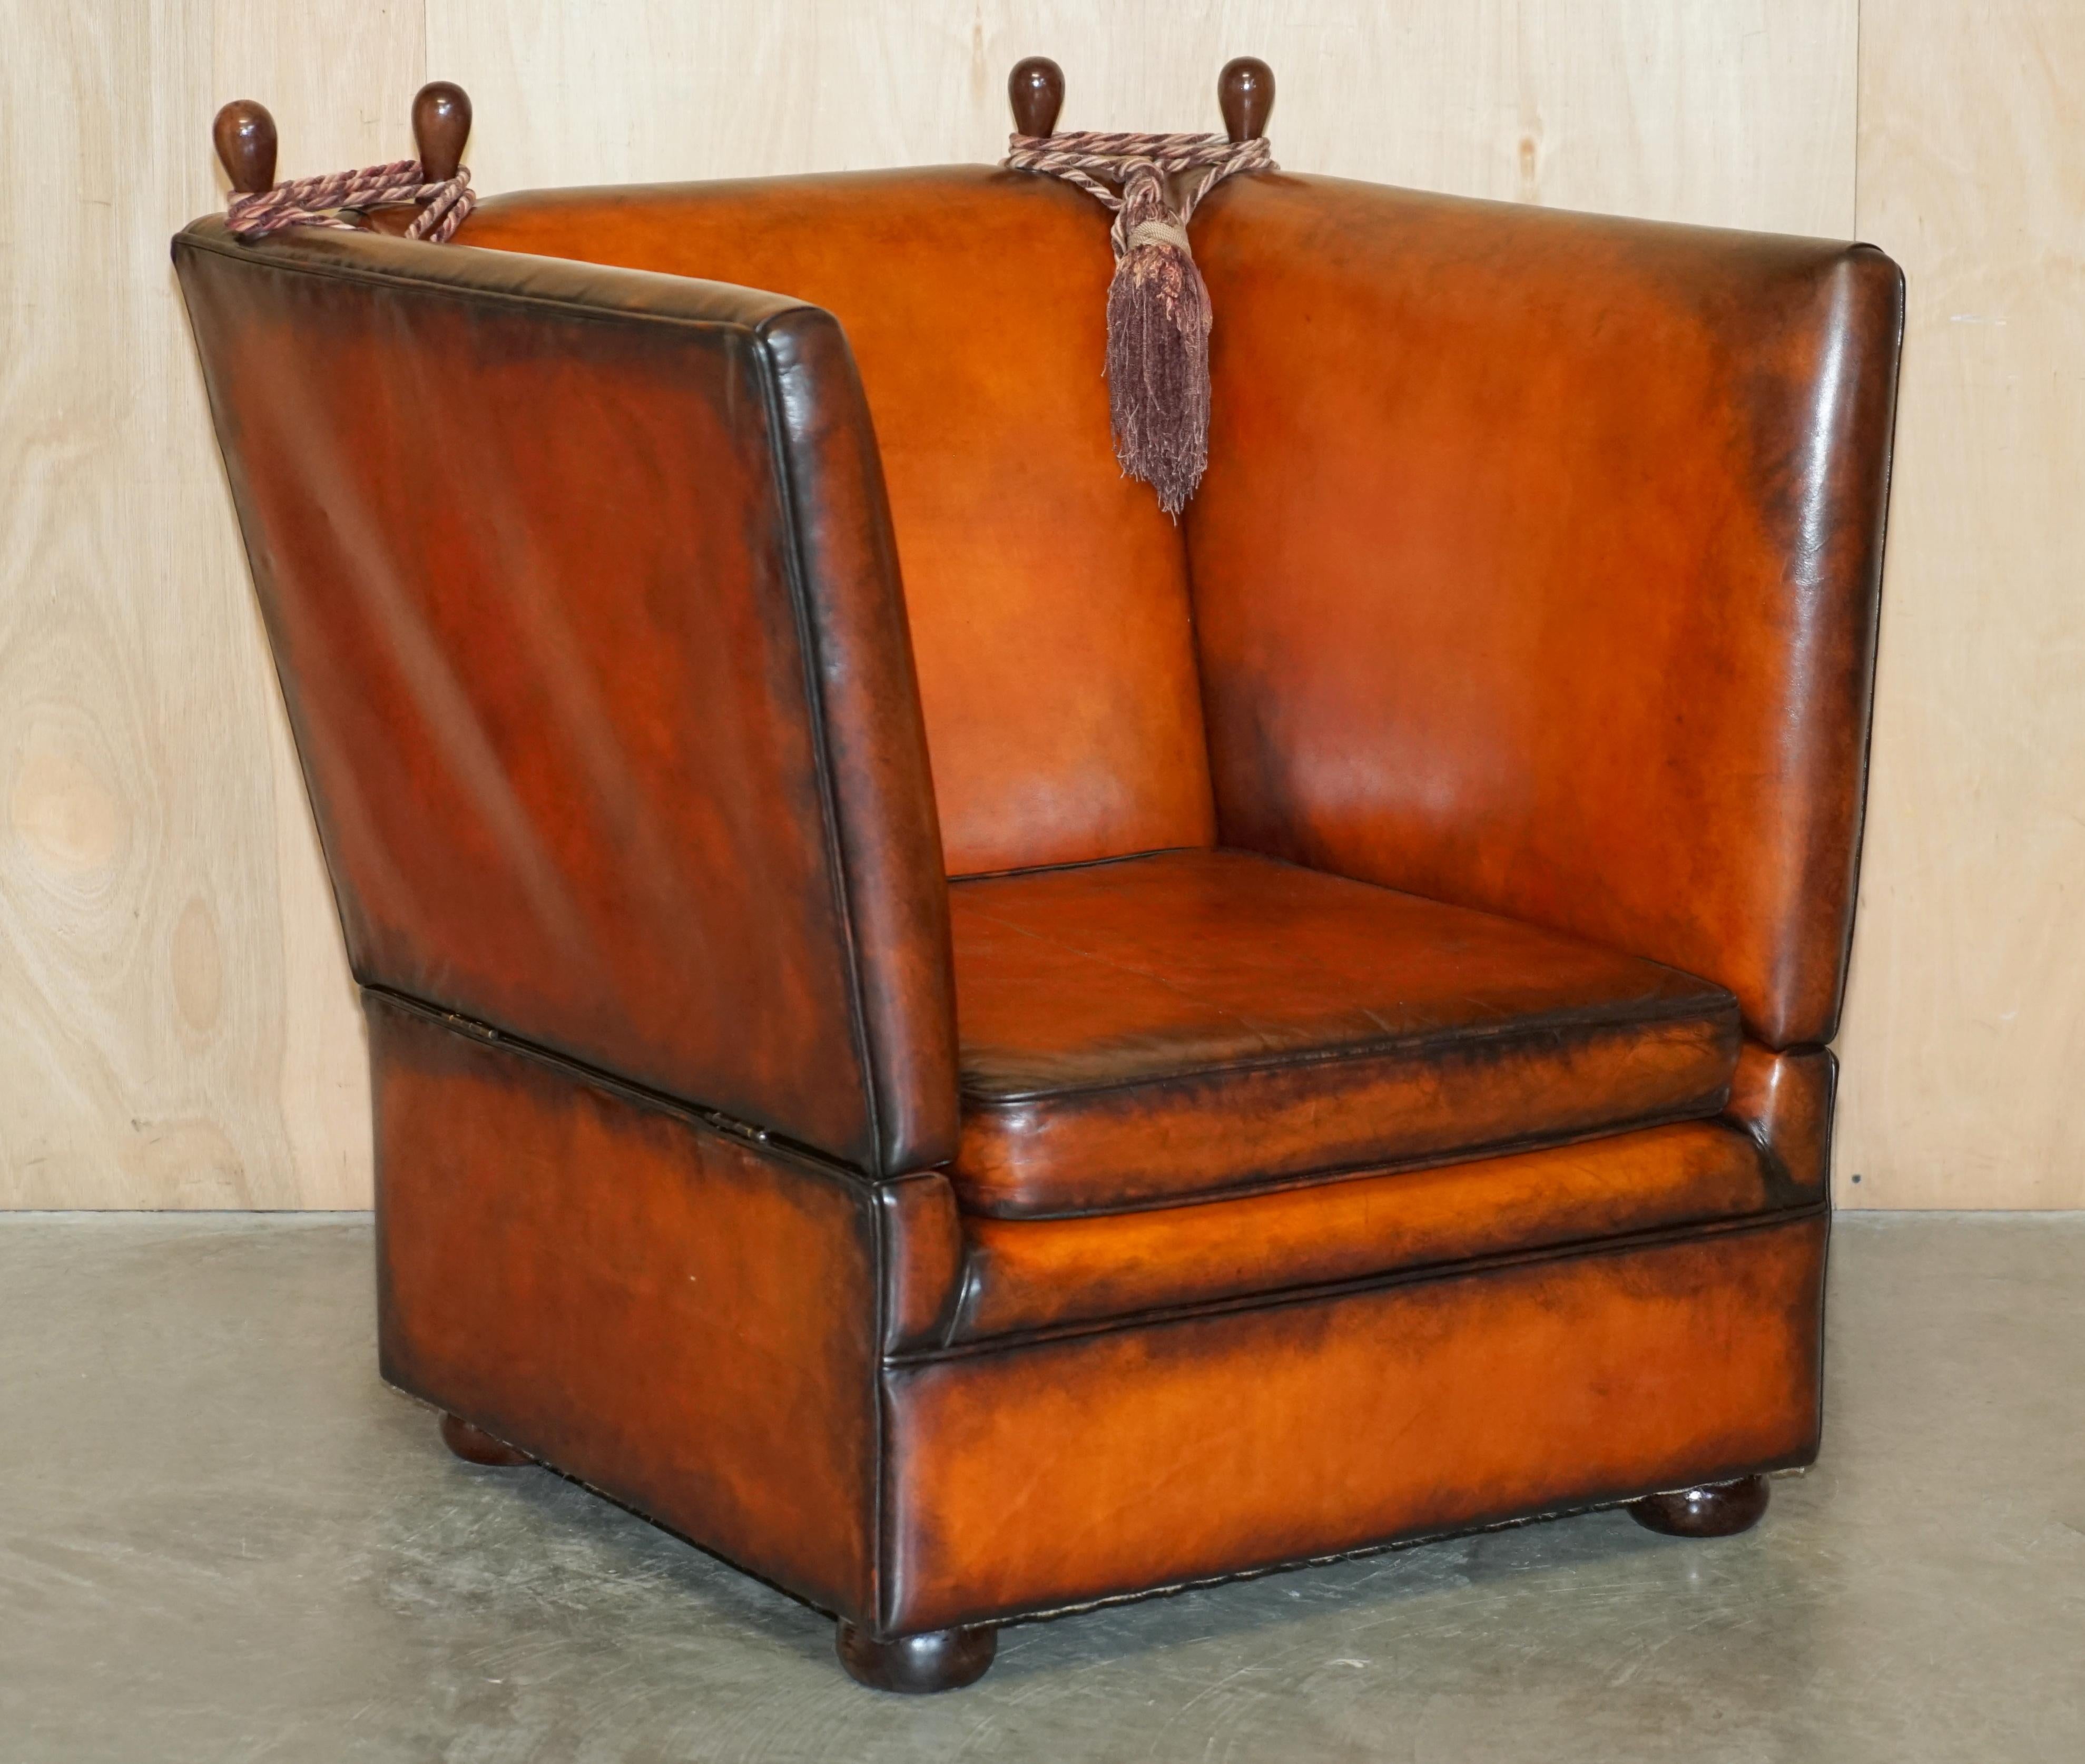 Royal House Antiques

The House Antiques a le plaisir d'offrir à la vente cette superbe paire de fauteuils club Knoll de style Art Déco, entièrement restaurés, en cuir richement teinté à la main et de couleur Whisky.

Veuillez noter que les frais de